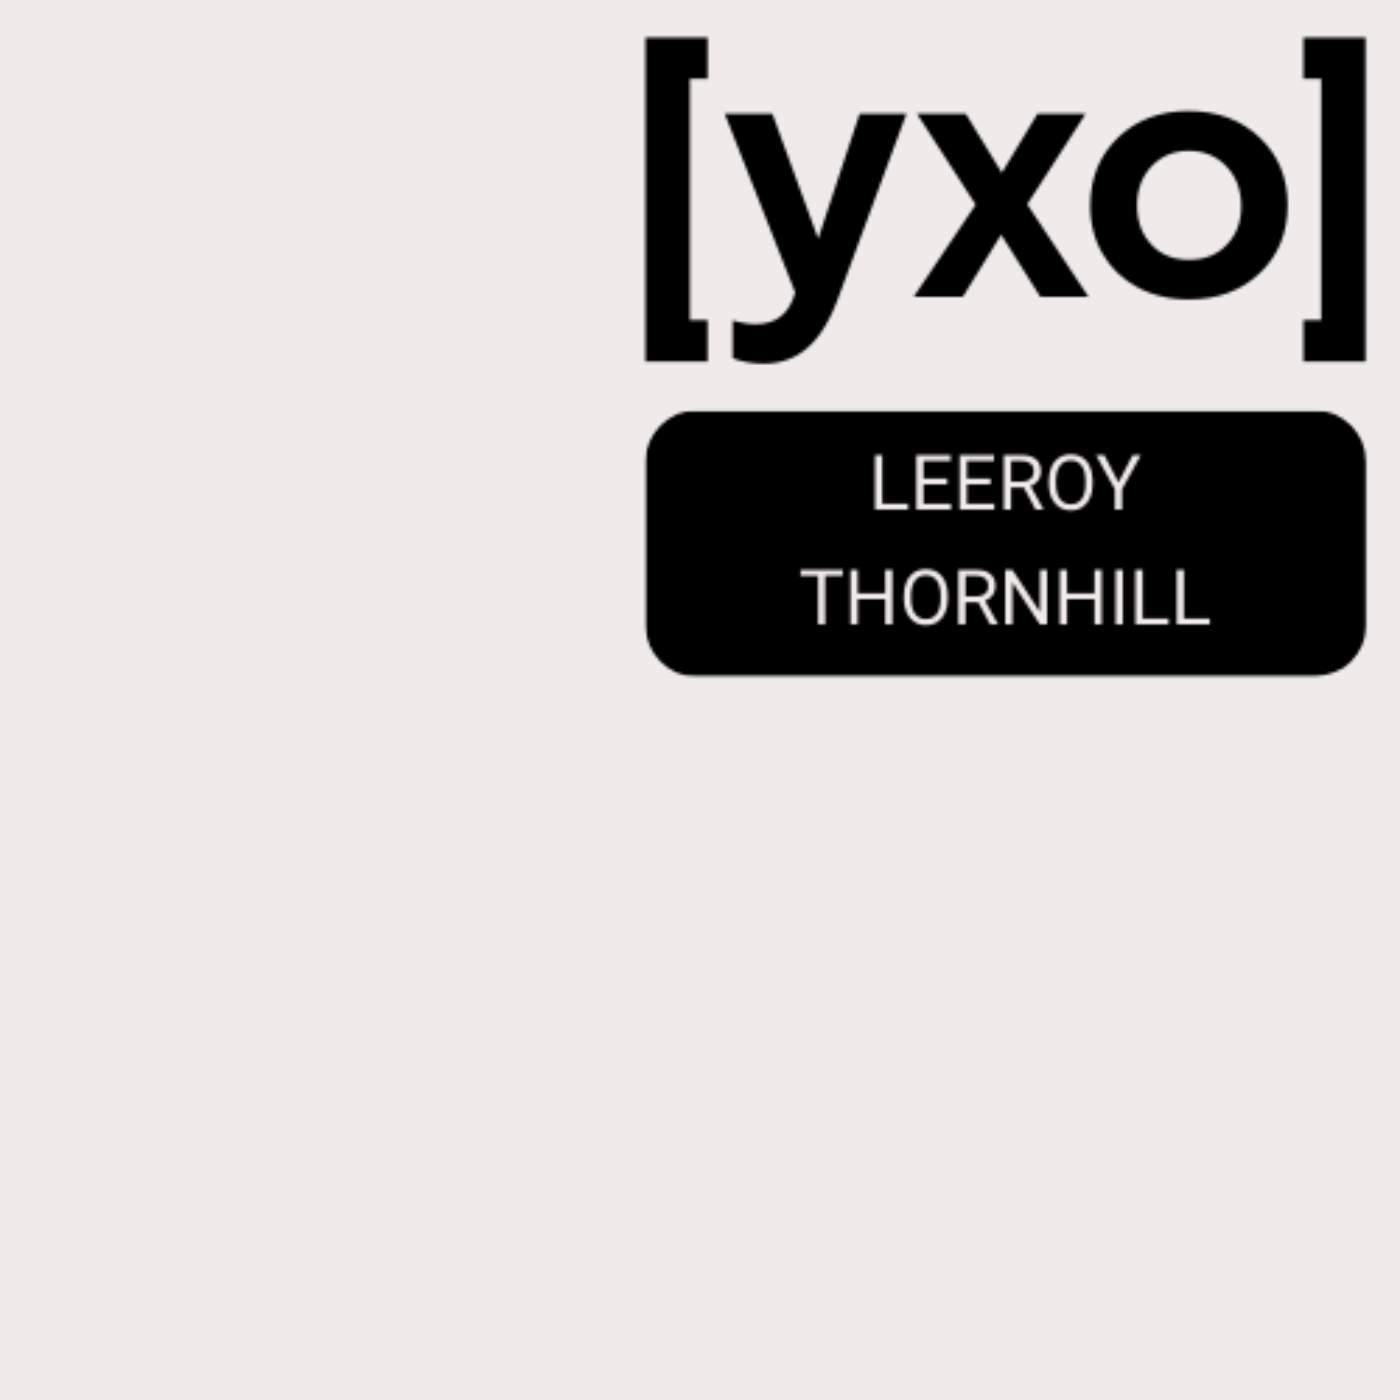 [ухо] - Leeroy Thornhill - The Prodigy